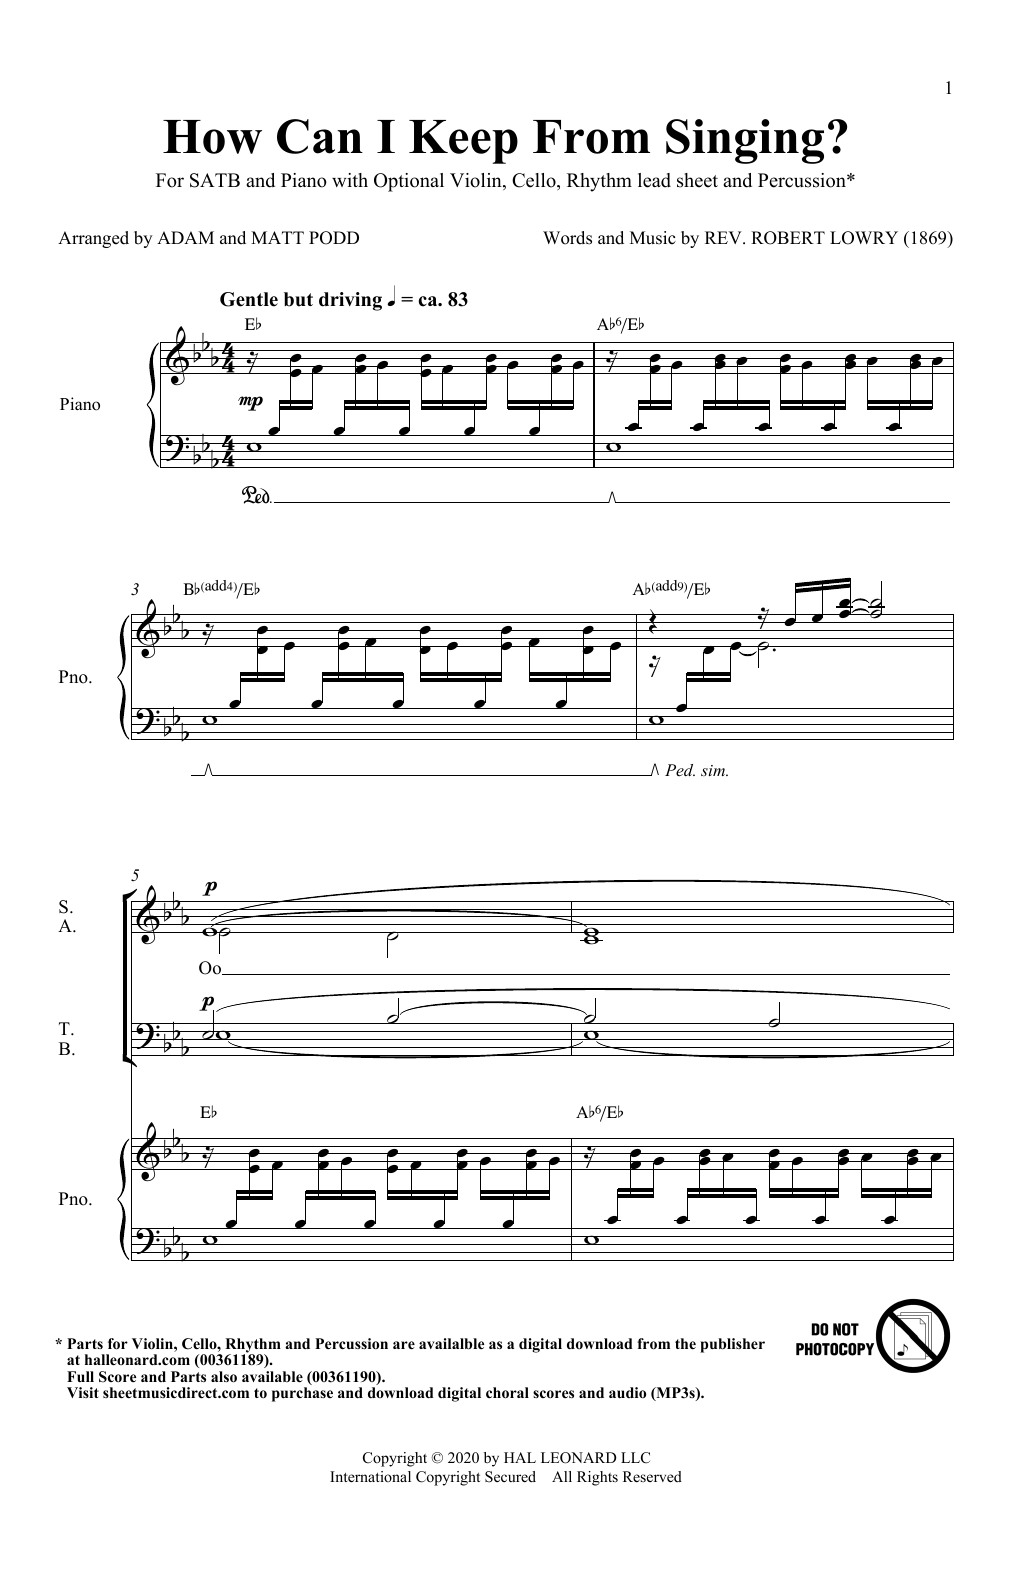 How Can I Keep From Singing (arr. Matt and Adam Podd) (SATB Choir) von Robert Lowry